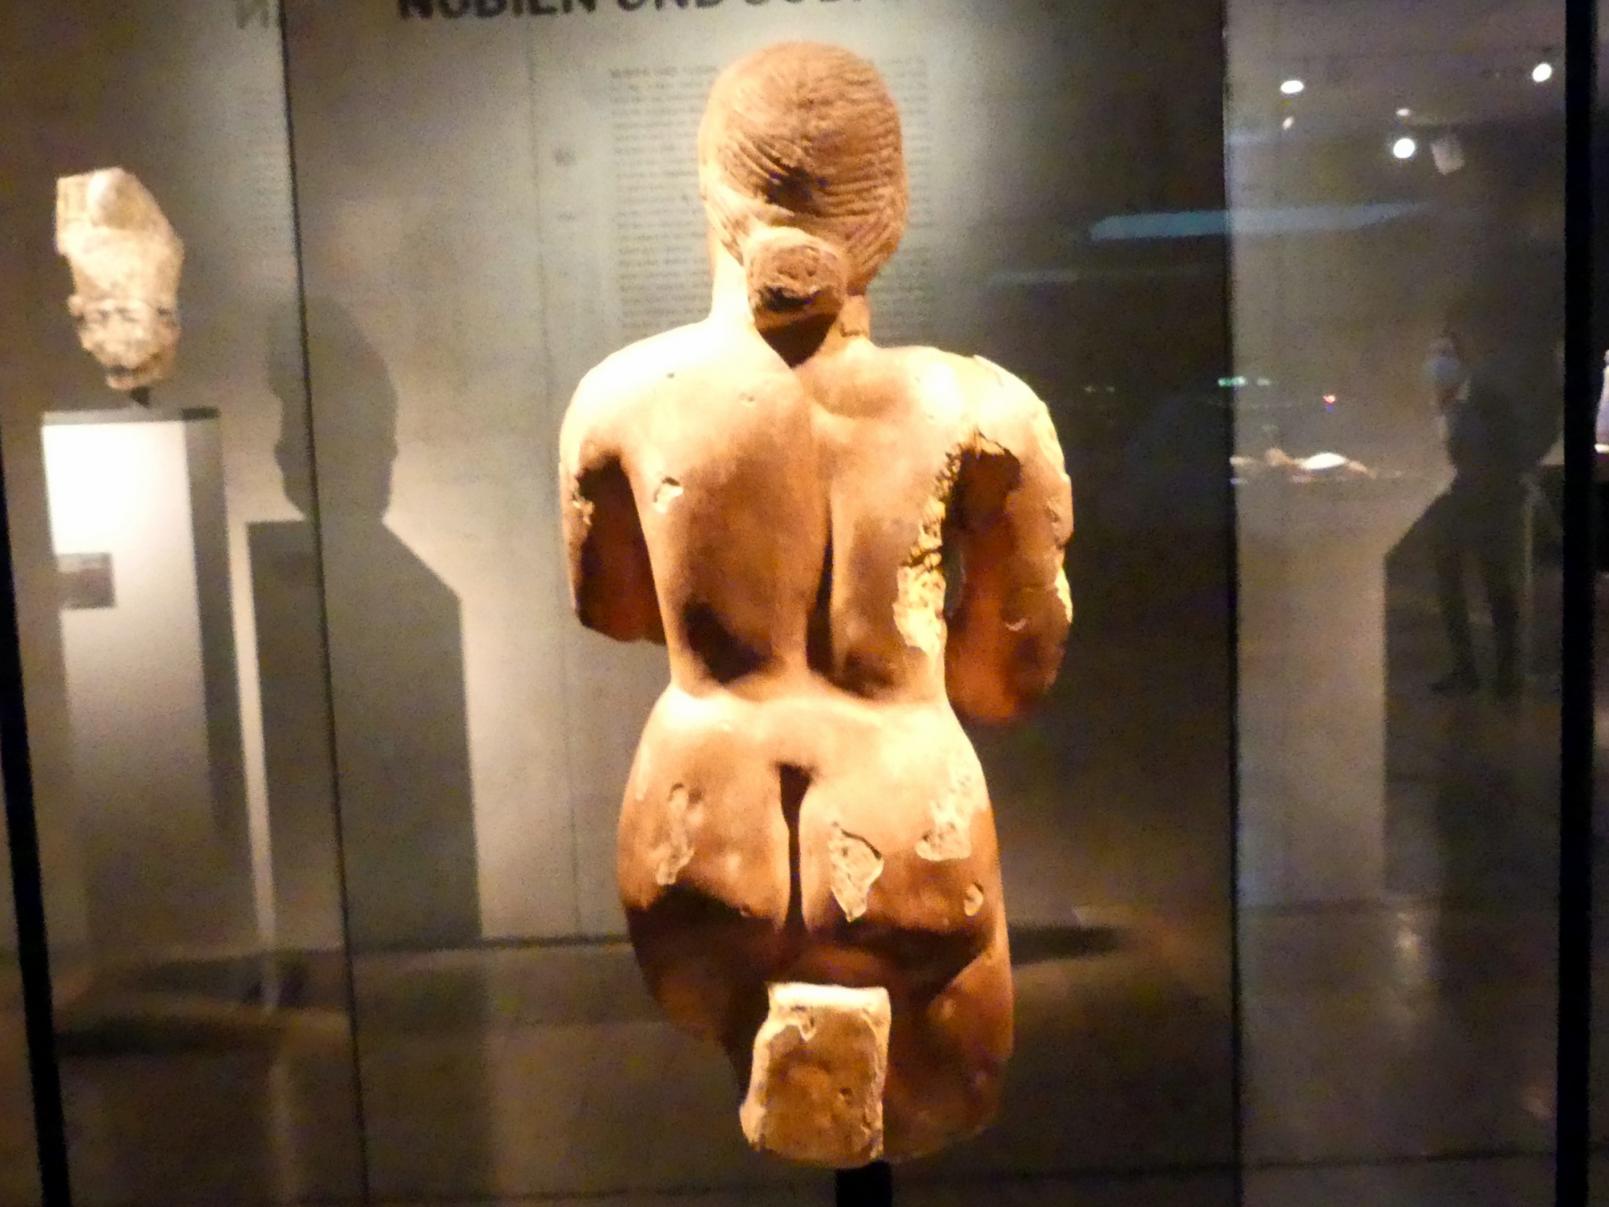 Standfigur einer Frau ("Meroitische Venus"), Meroitische Zeit, 200 v. Chr. - 500 n. Chr., 100 - 300, Bild 3/4